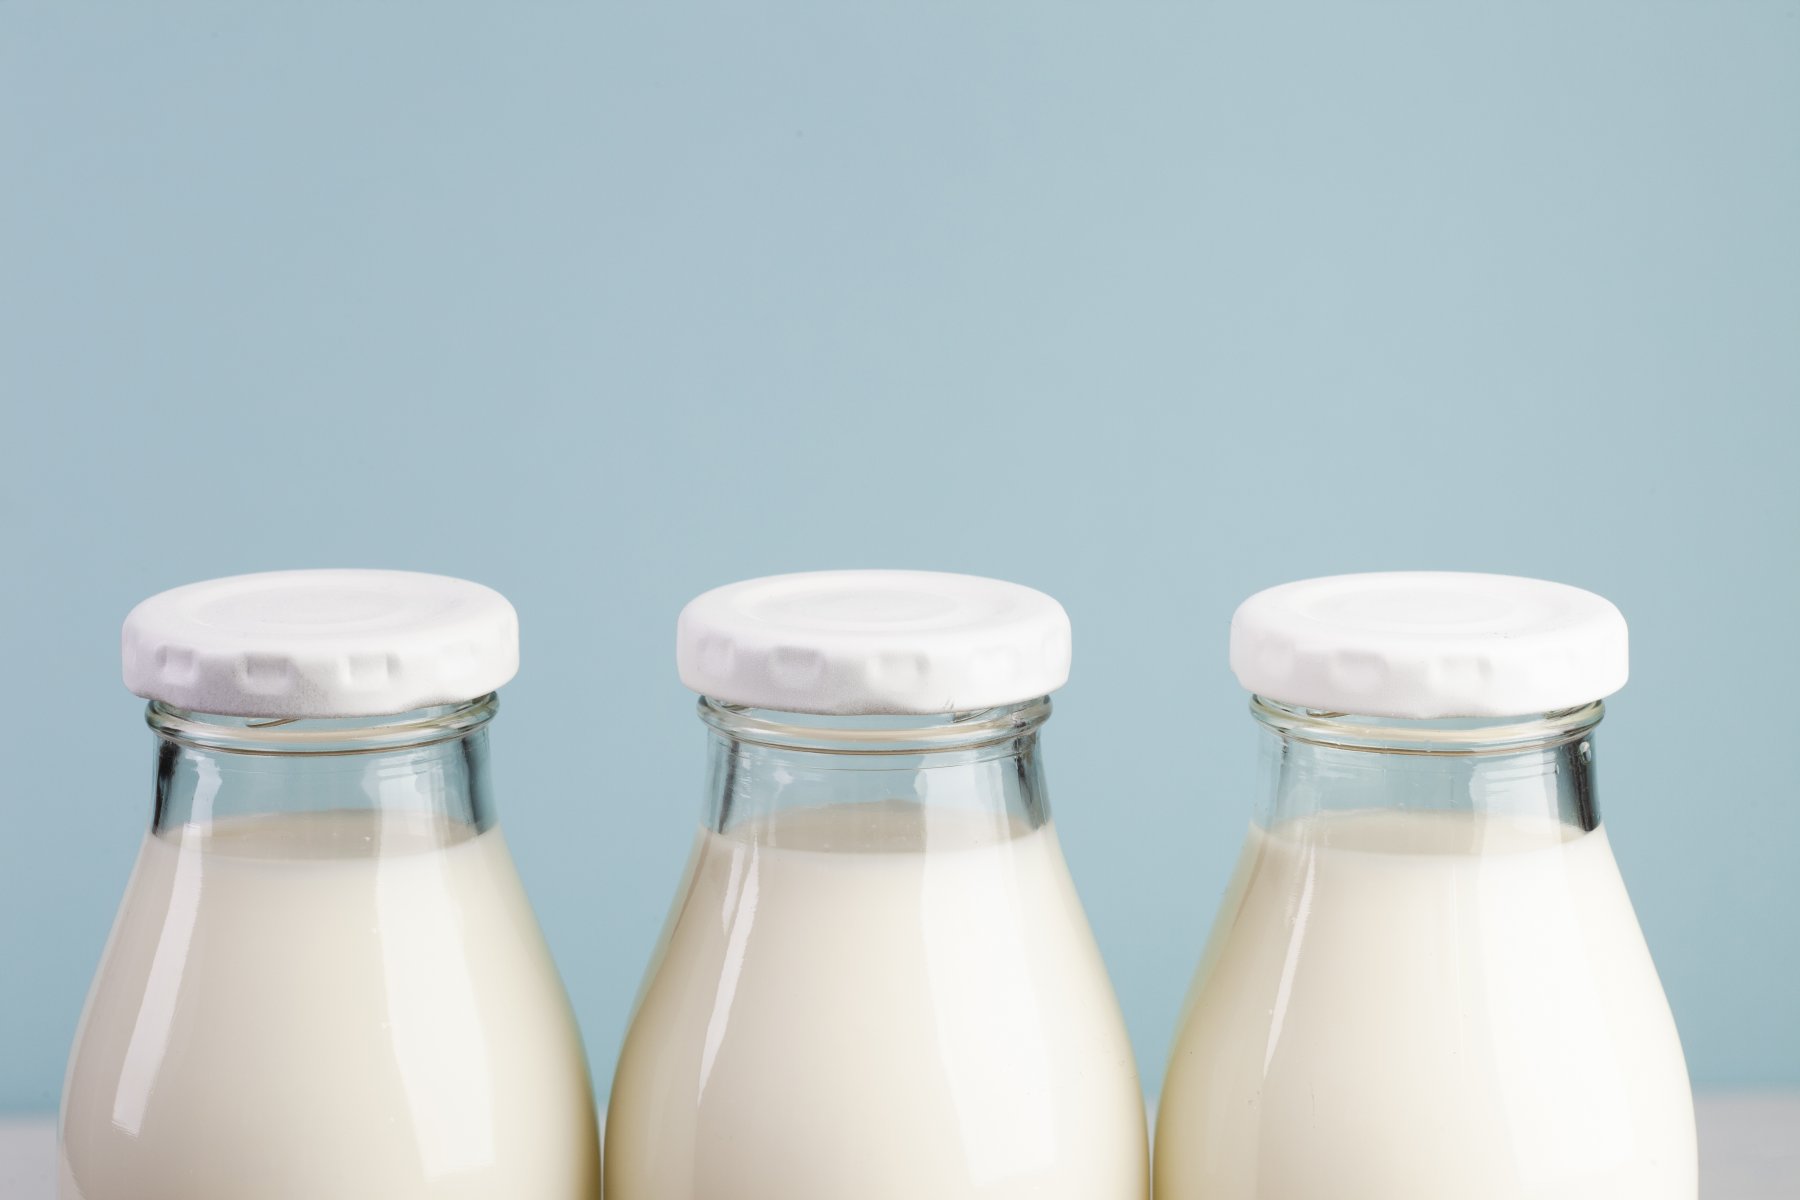 Роспотребнадзор выявил несуществующее молочное предприятие в Подмосковье  